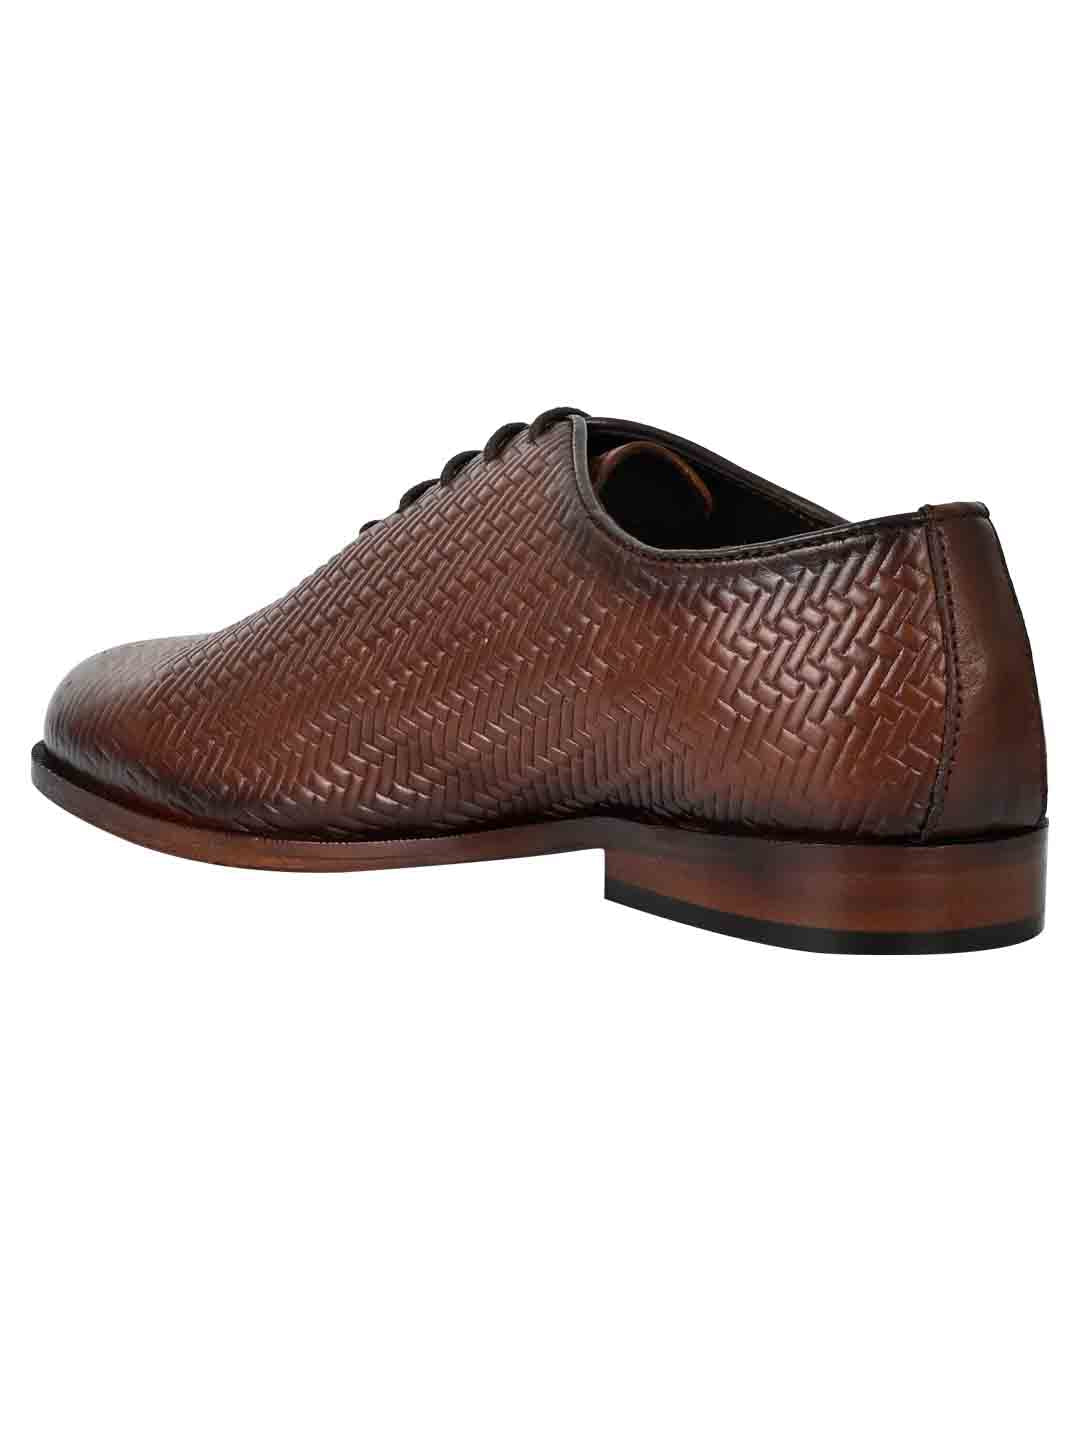 Footwear, Men Footwear, Brown Oxford Shoes